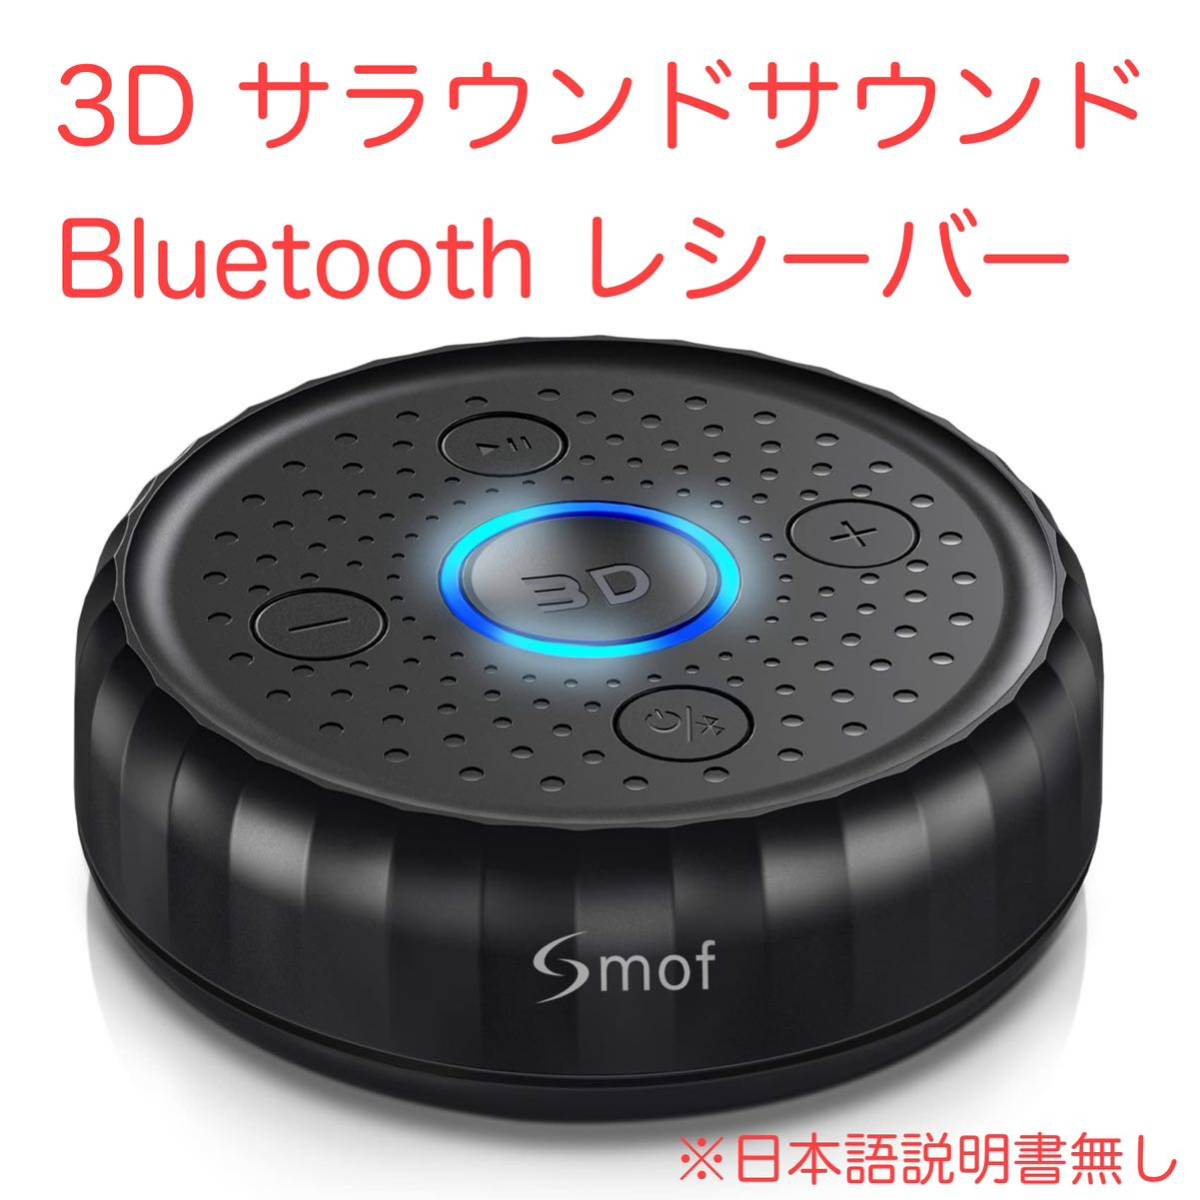 専門店では 3D サラウンドサウンドBluetooth レシーバー 日本語取扱説明書なし